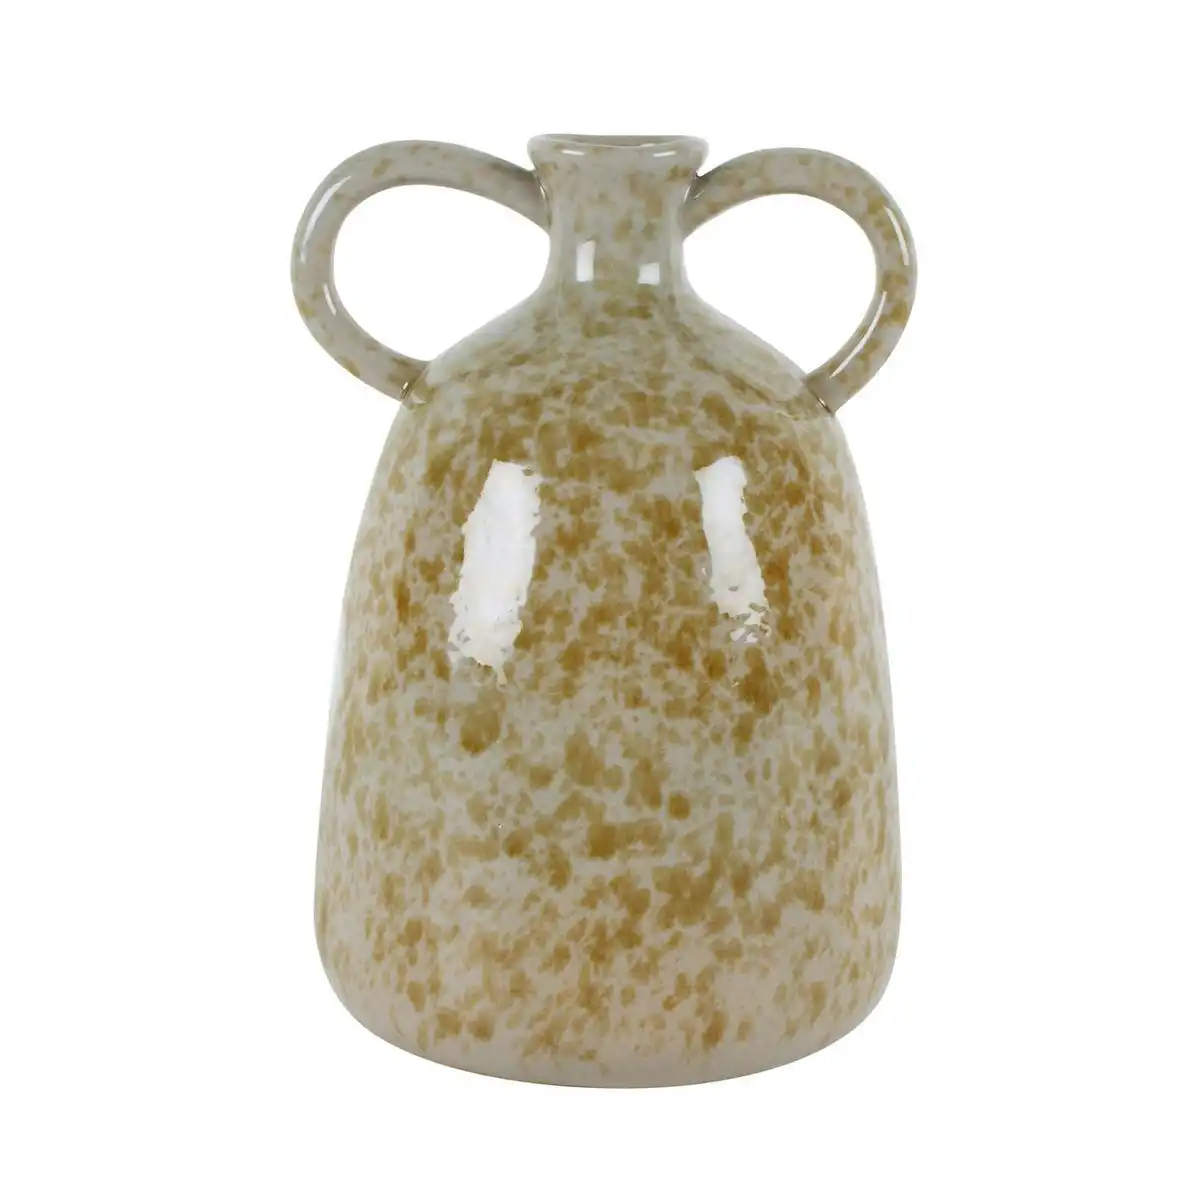 Izik Stone Decanter Vase With Handle 22 x 16 x 15 cm